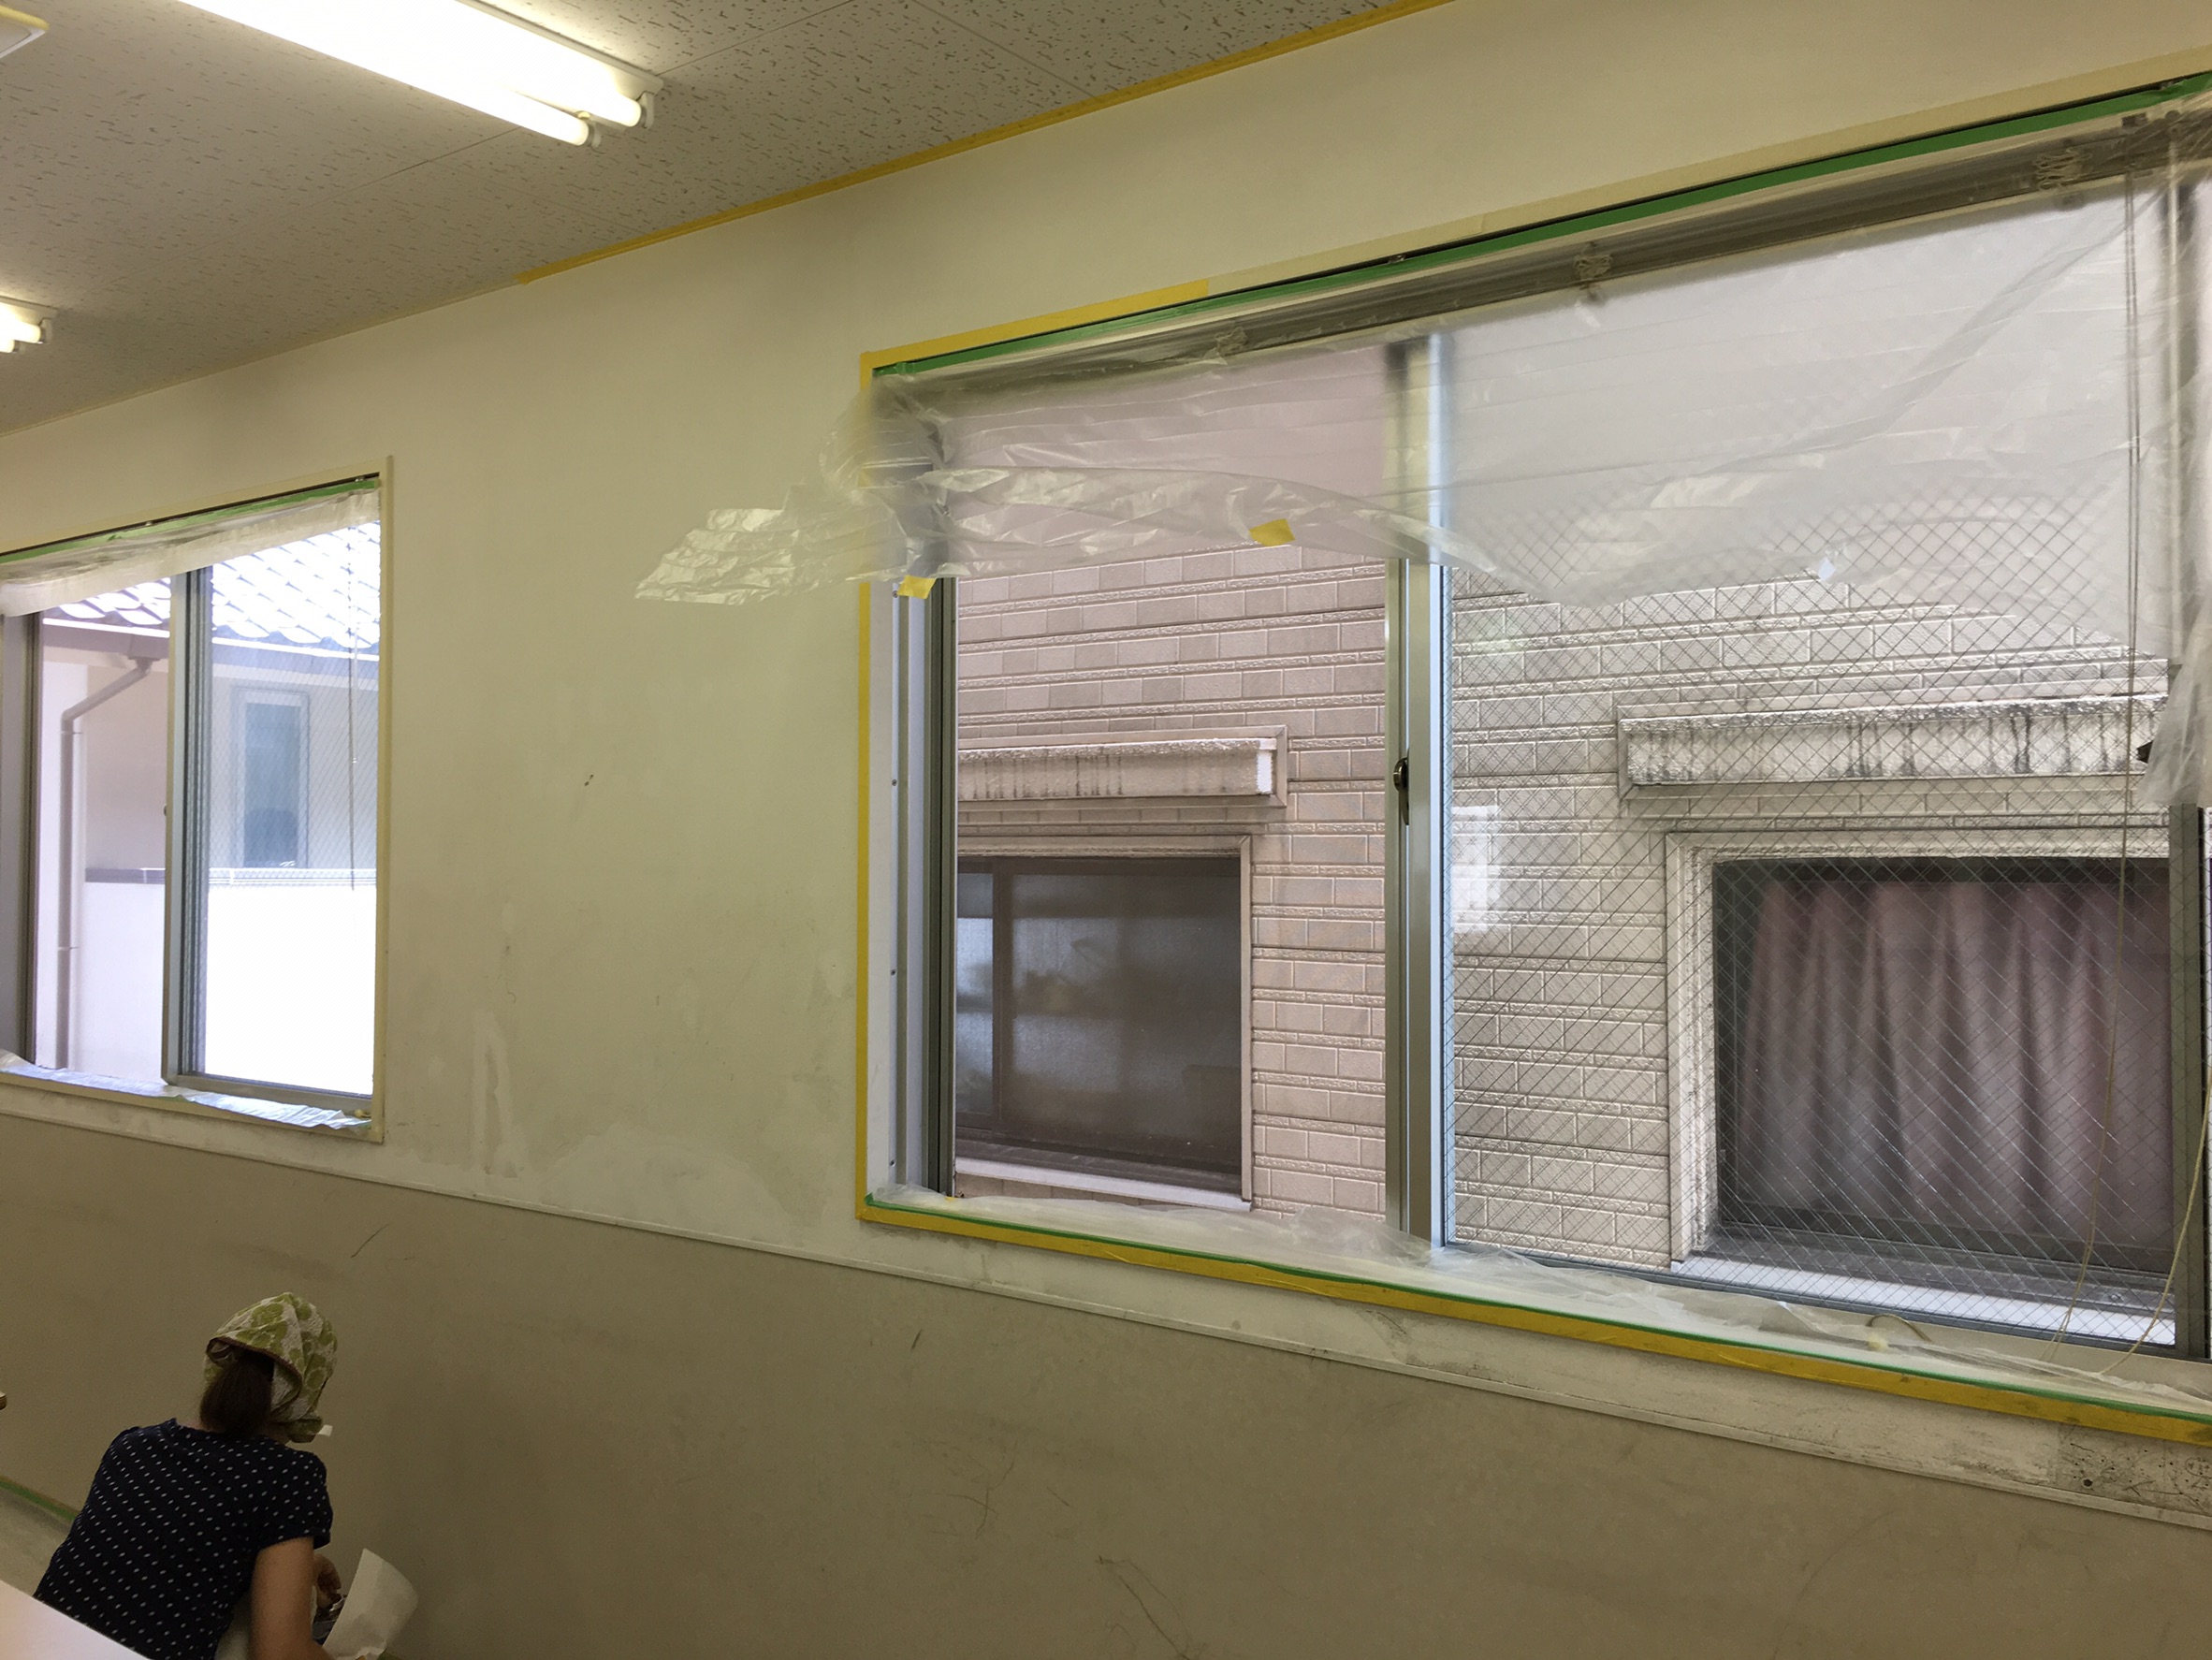 Diyで壁の塗装 アクセントウォールのある教室に 広島のデザイン事務所 ロバ企画室 デザインで たのしく あったかく